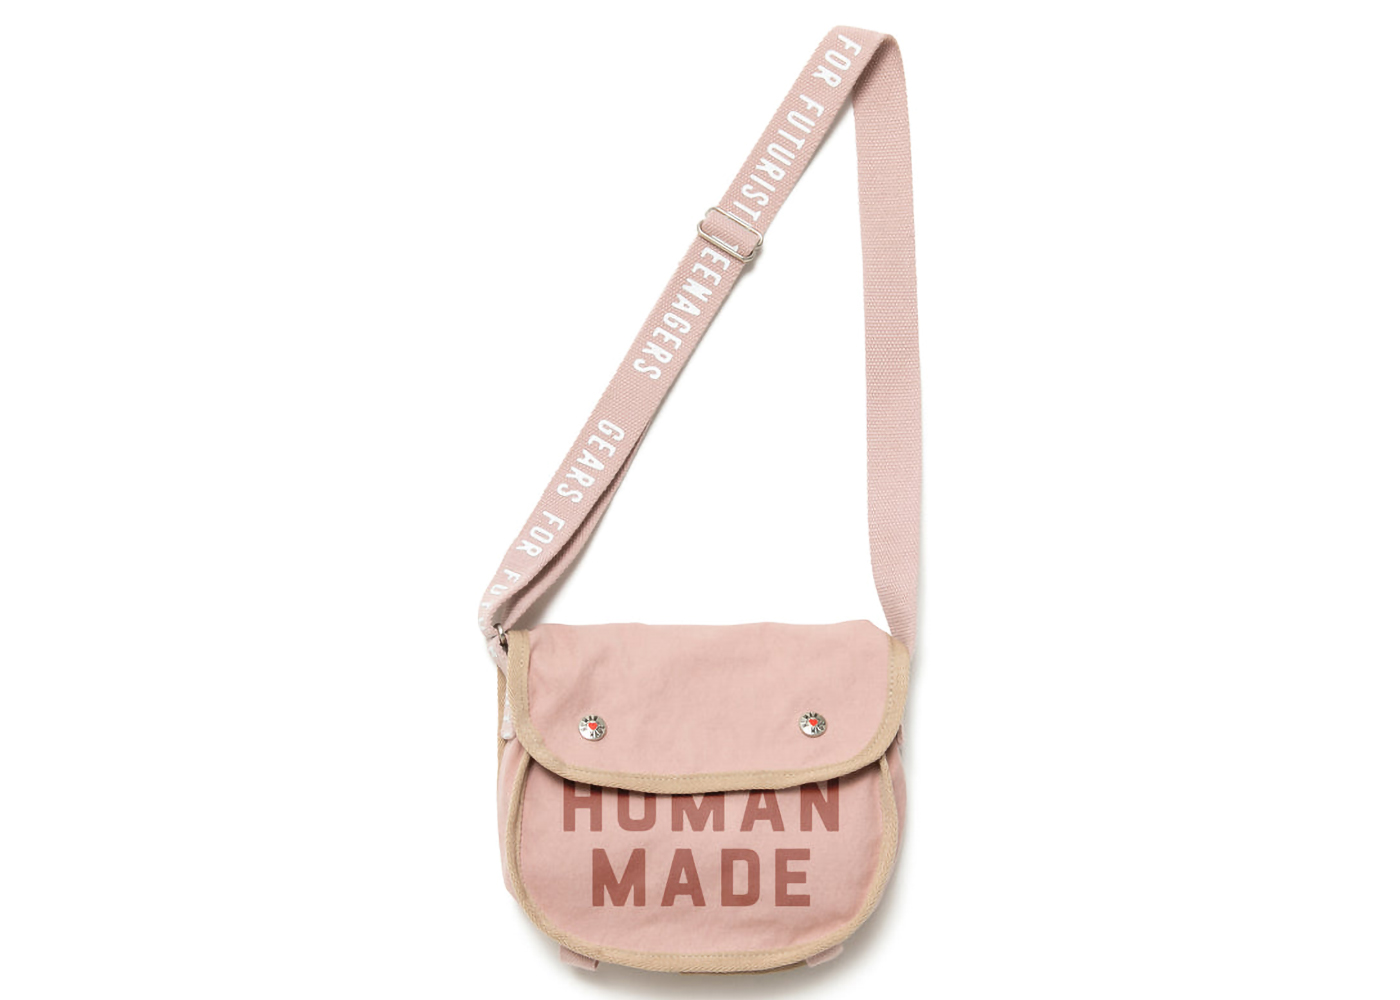 Human Made Tool Bag Small Pink